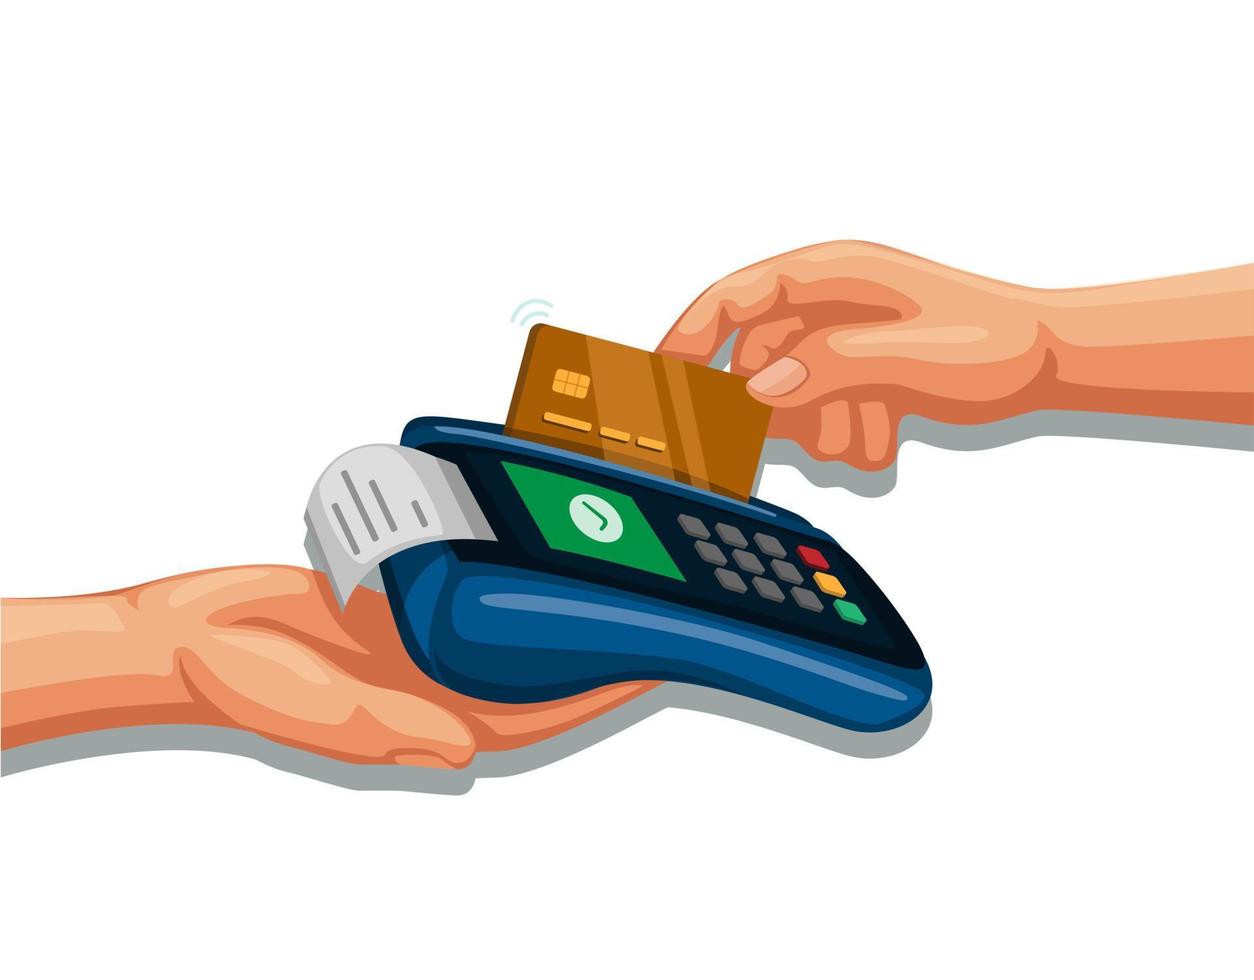 strisciare a mano la carta di credito sul dispositivo di pagamento, mobile banking e shopping simbolo concetto fumetto illustrazione vettoriale